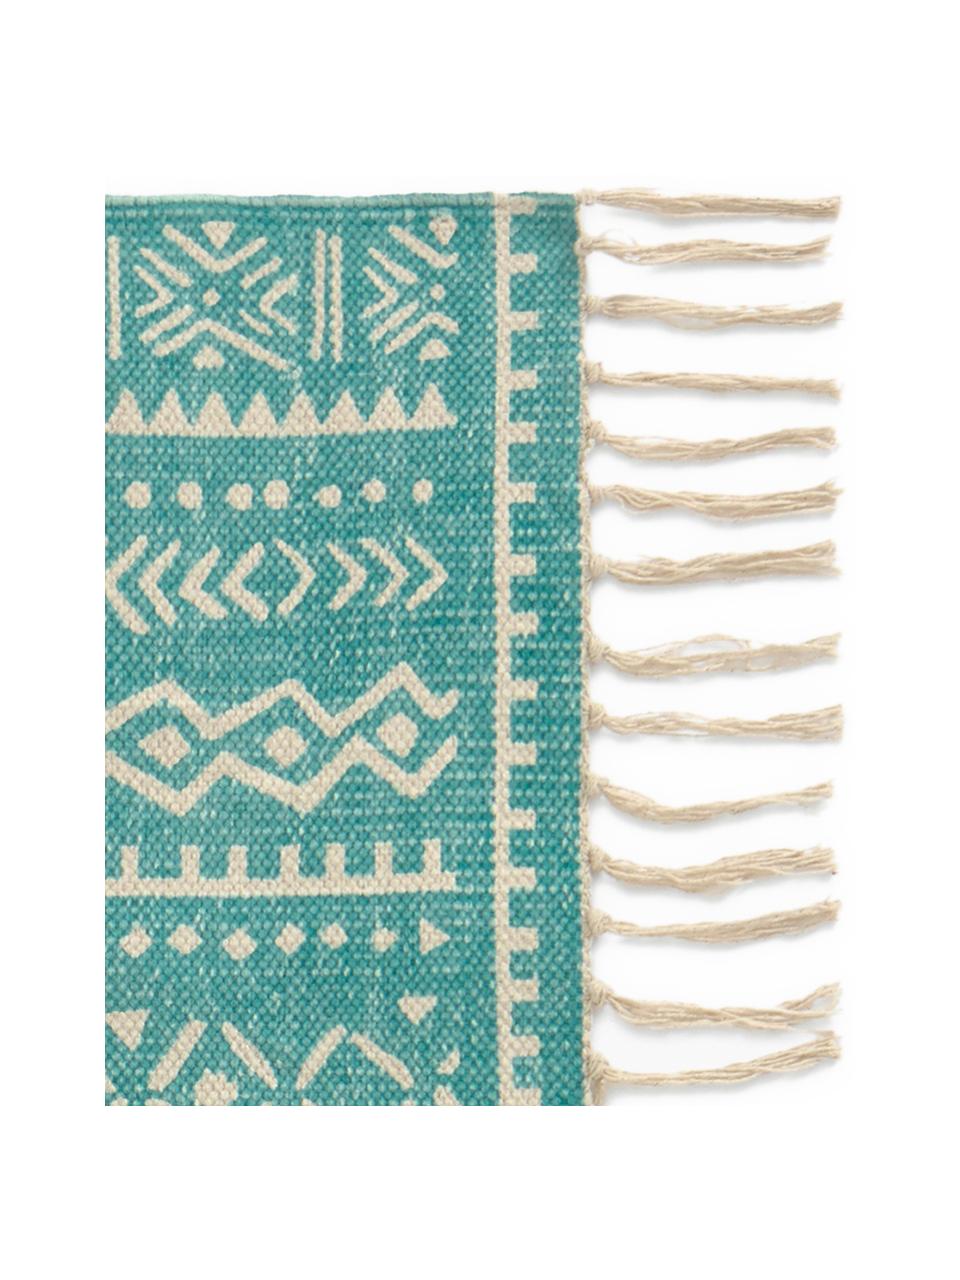 Teppich Afra mit grafischem Muster in Türkis-Weiß, 100% Baumwolle, Türkis, Gebrochenes Weiß, B 60 x L 90 cm (Größe XXS)